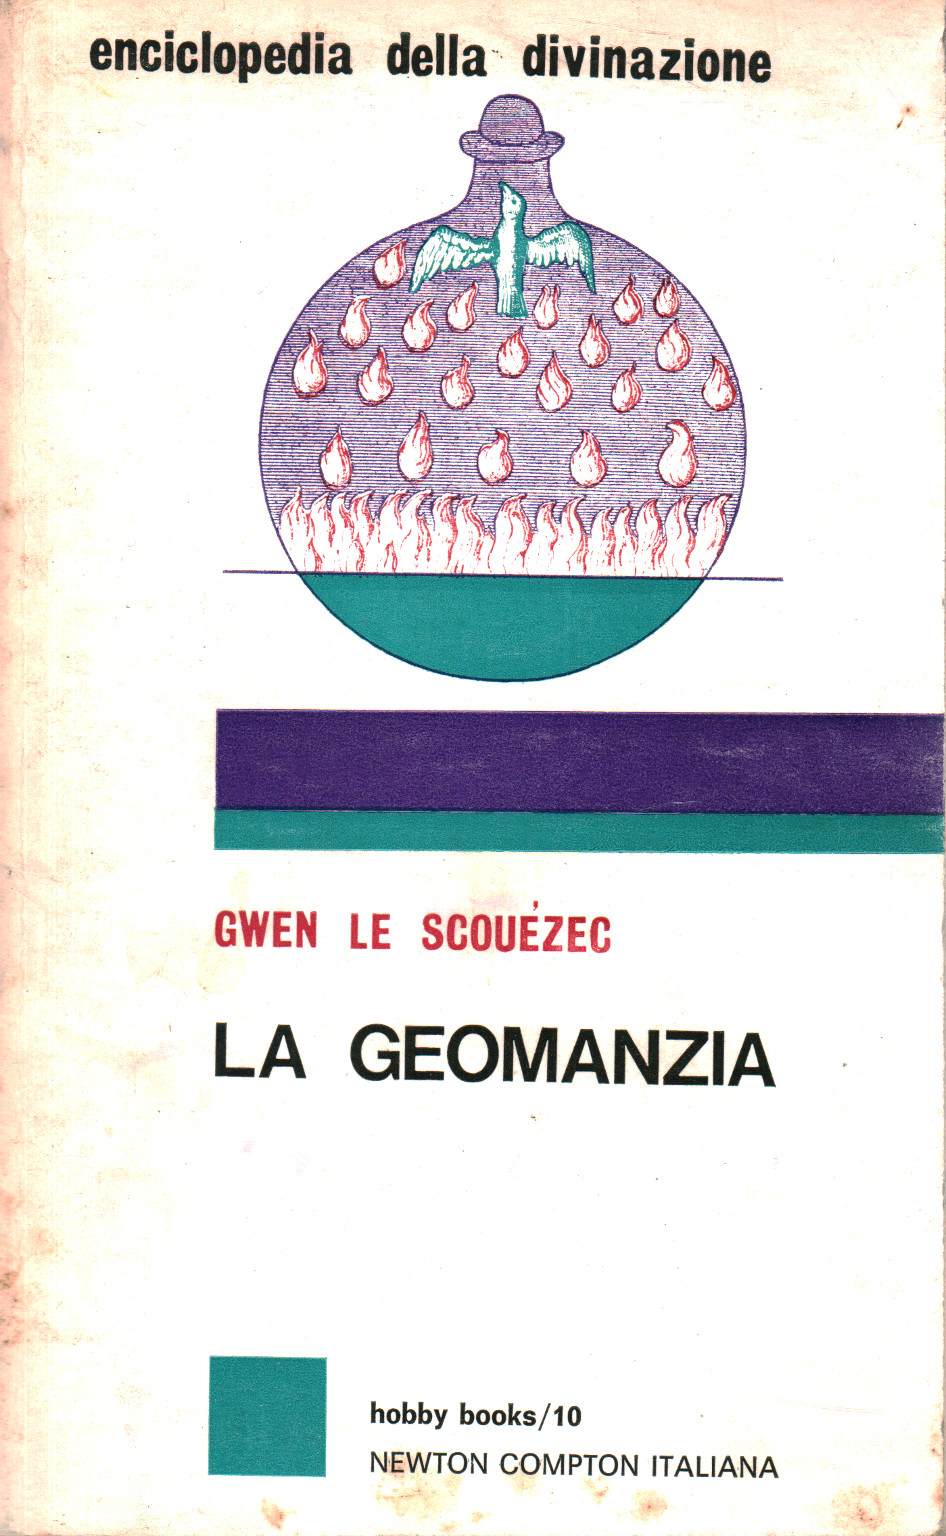 Enciclopedia della divinazione. La geomanzia, s.a.